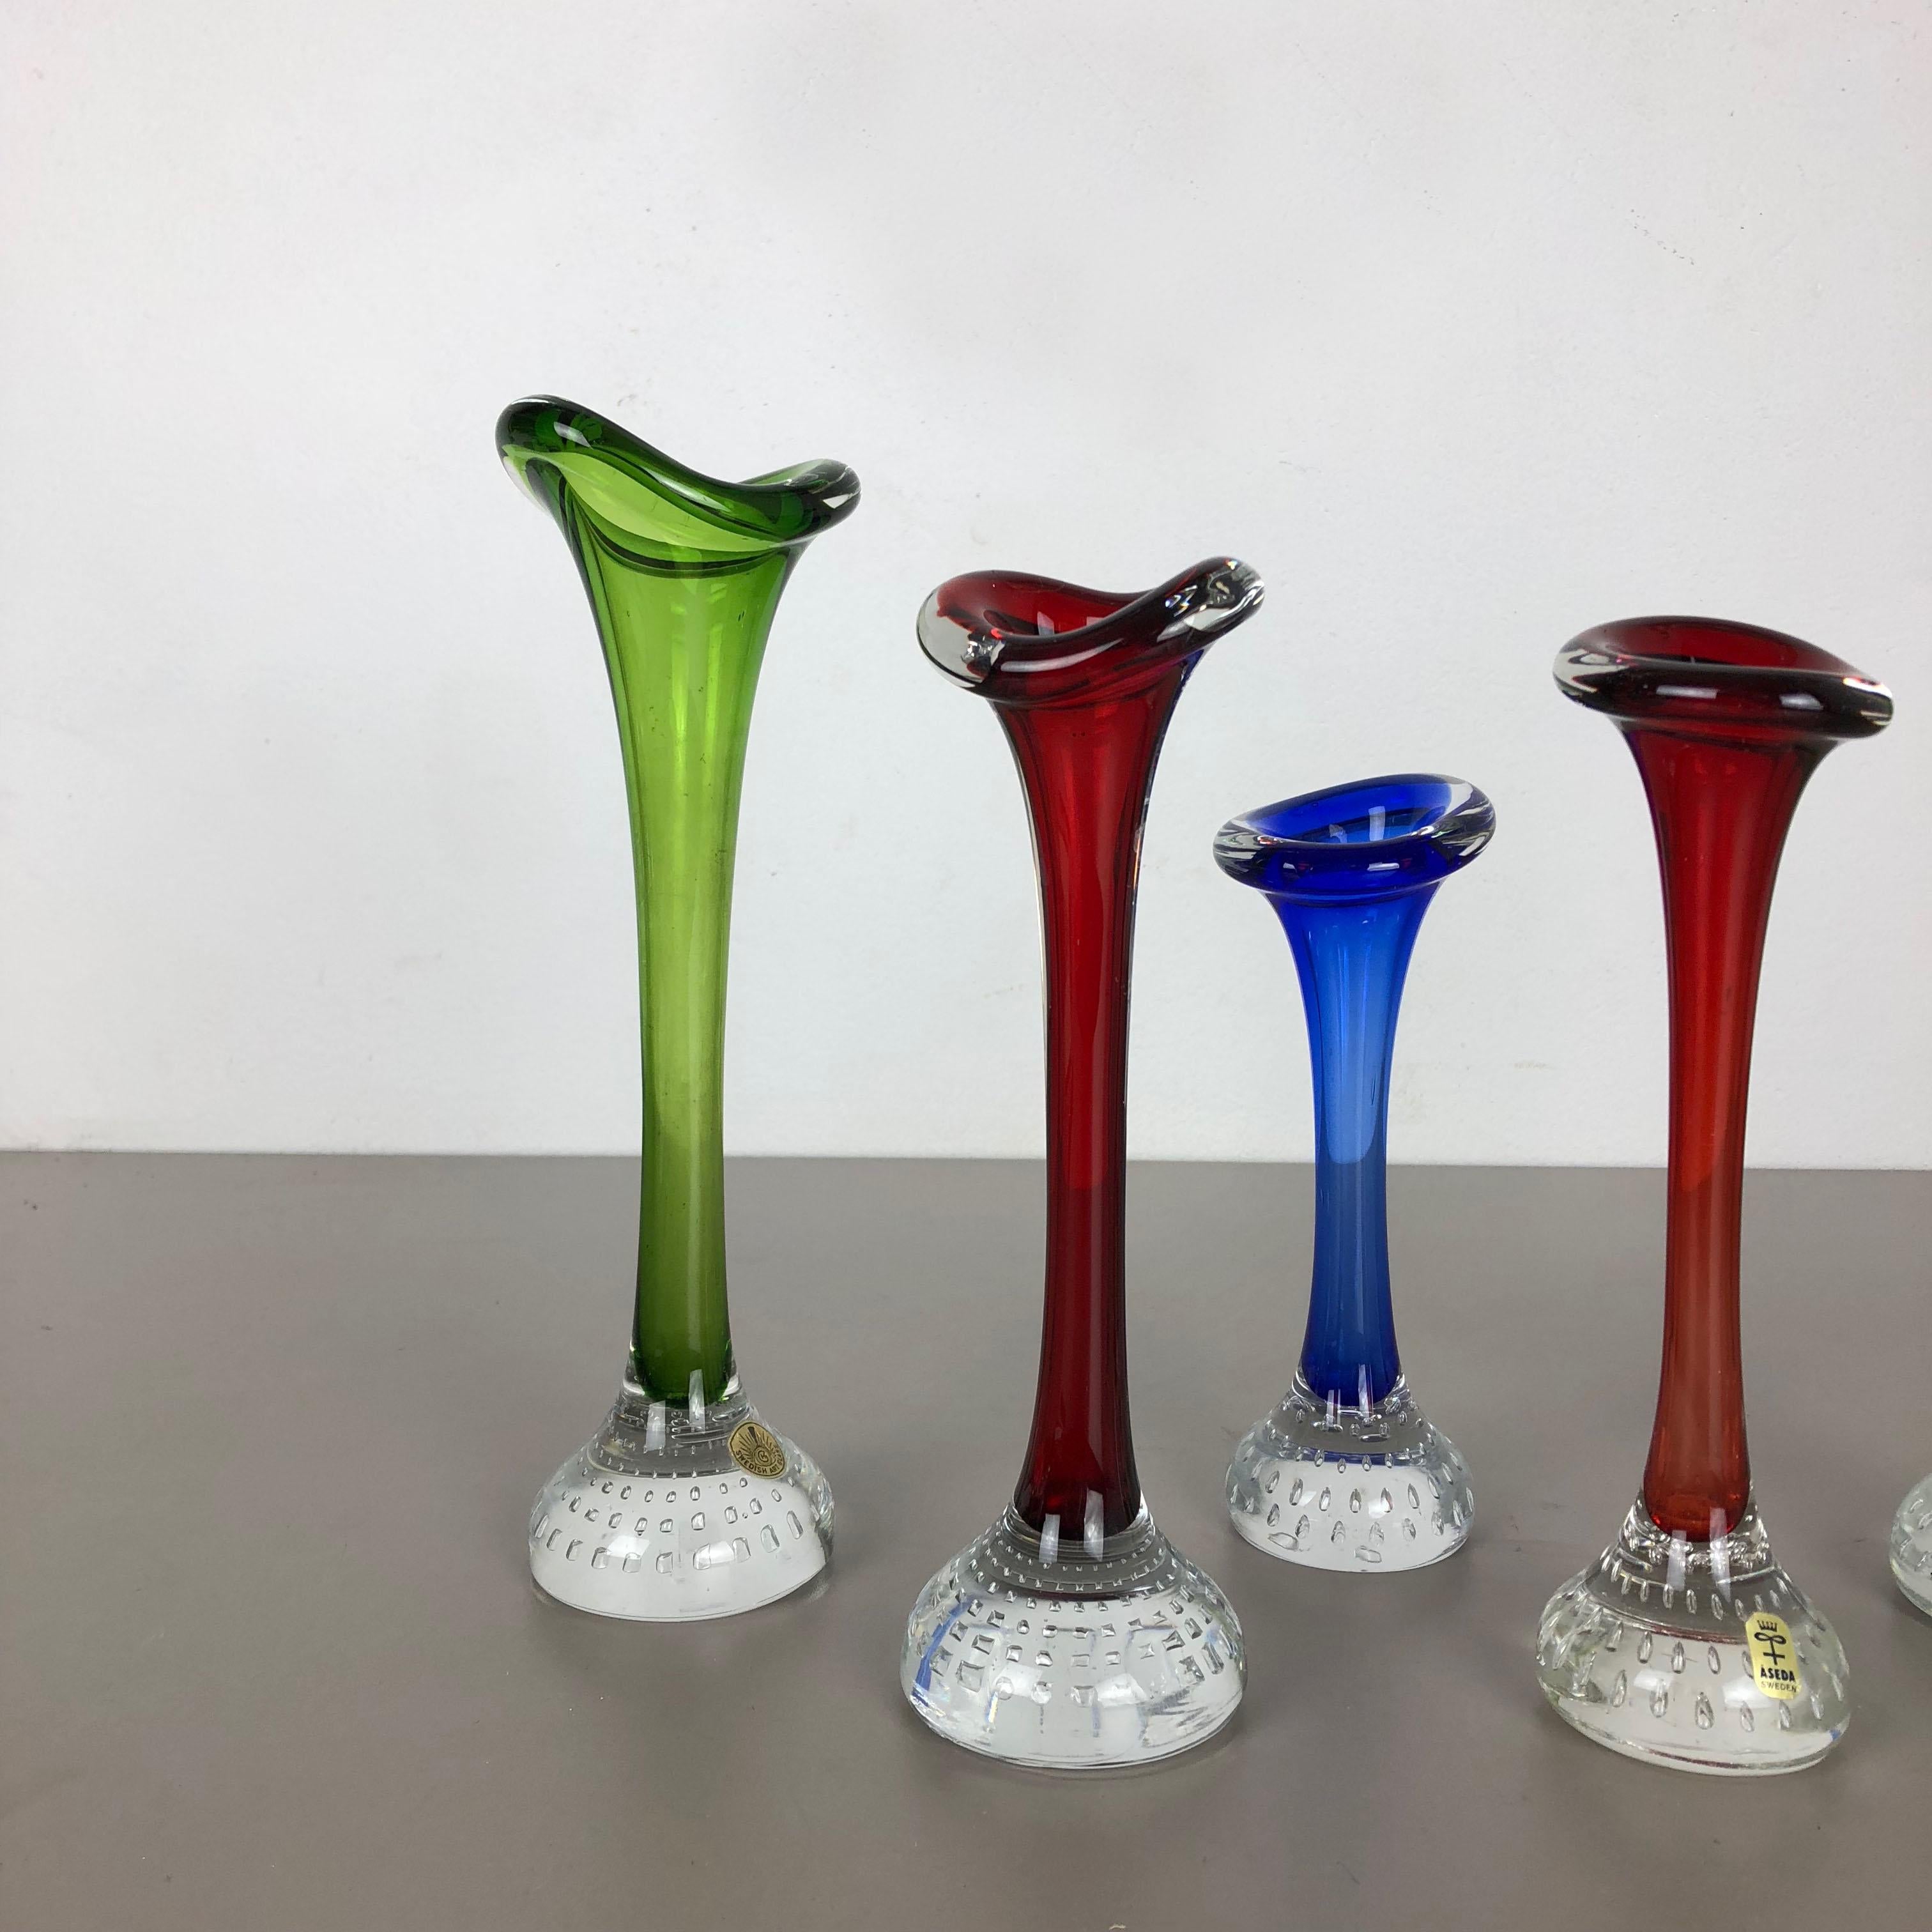 Article :

Ensemble de 5 vases en verre


Producteur :

ASEDA, Suède


Design :

Bo Borgstrom 



Décennie :

1970s


Ensemble original de 5 vases de la série Tulip d'ASEDA, datant des années 1970. Ces cinq vases ont été conçus